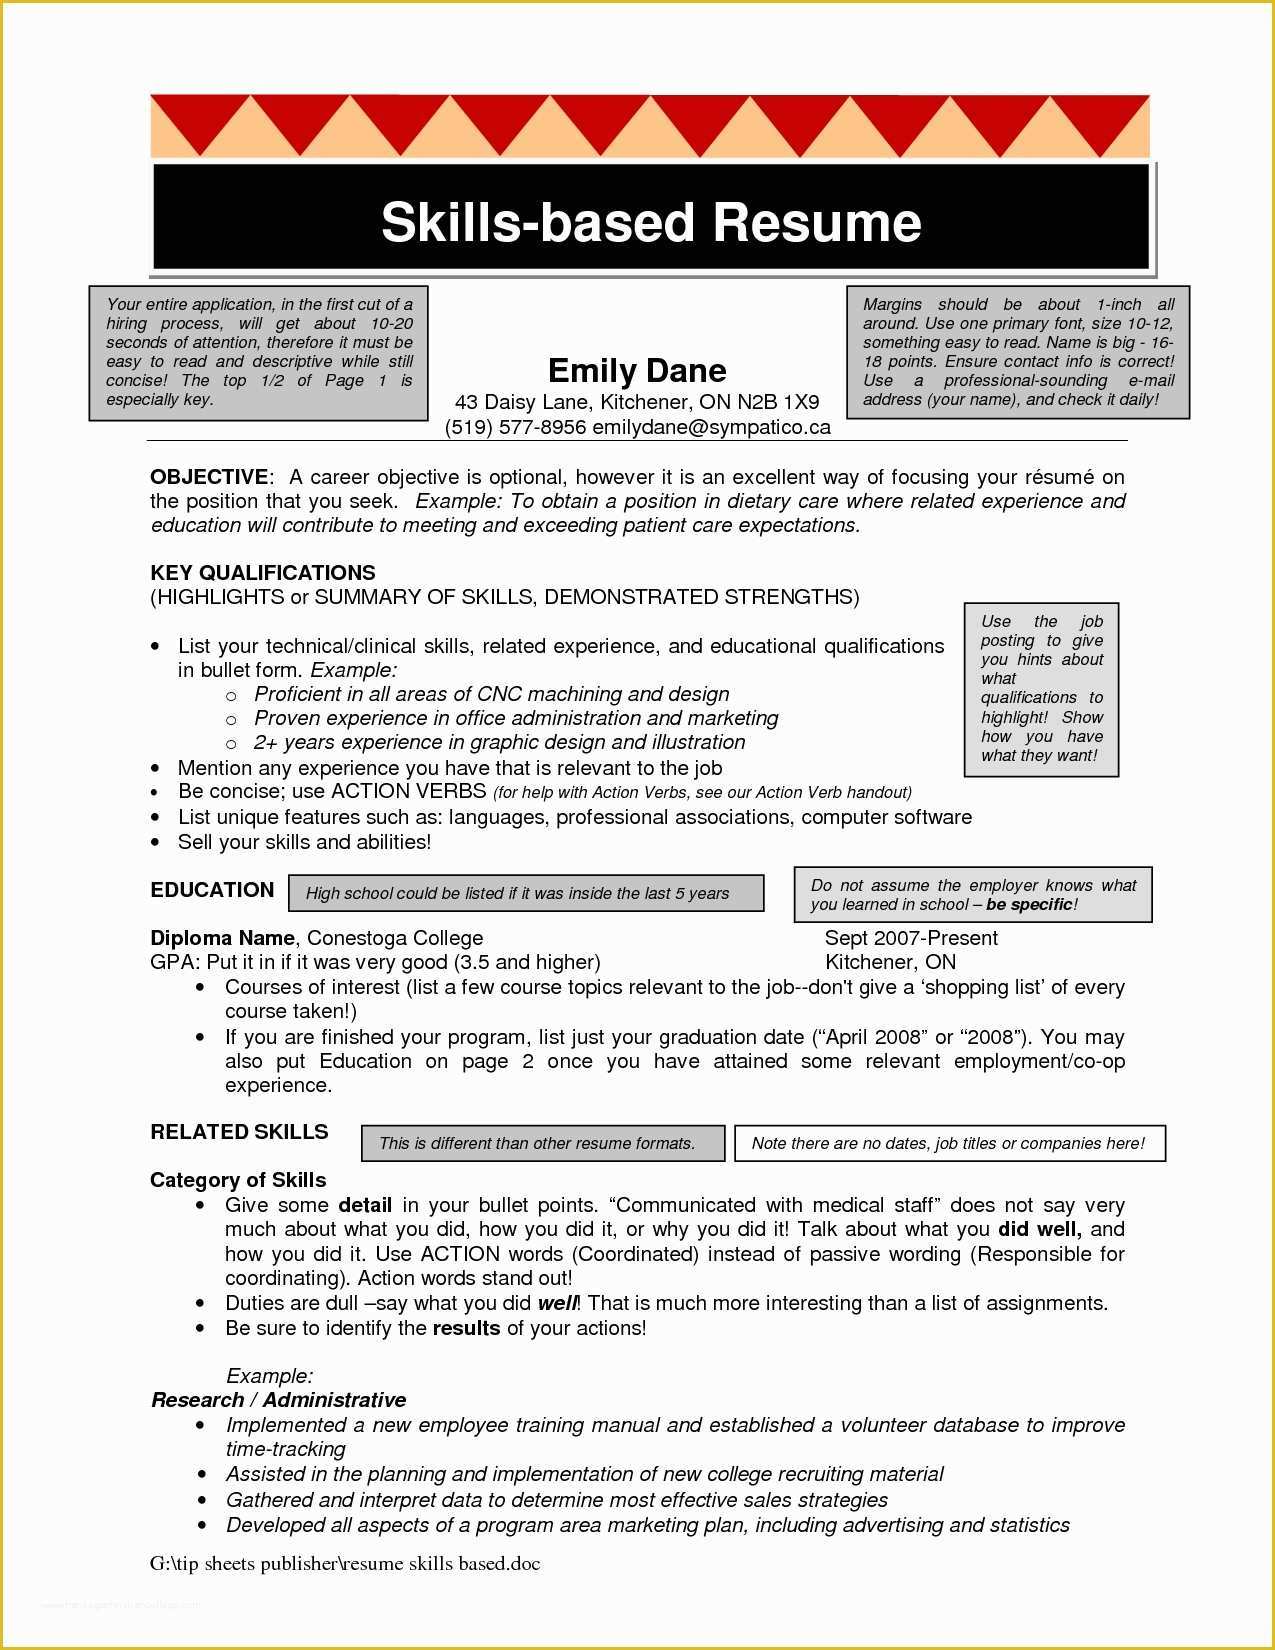 Skills Based Resume Template Free Of Skills Based Resume Template